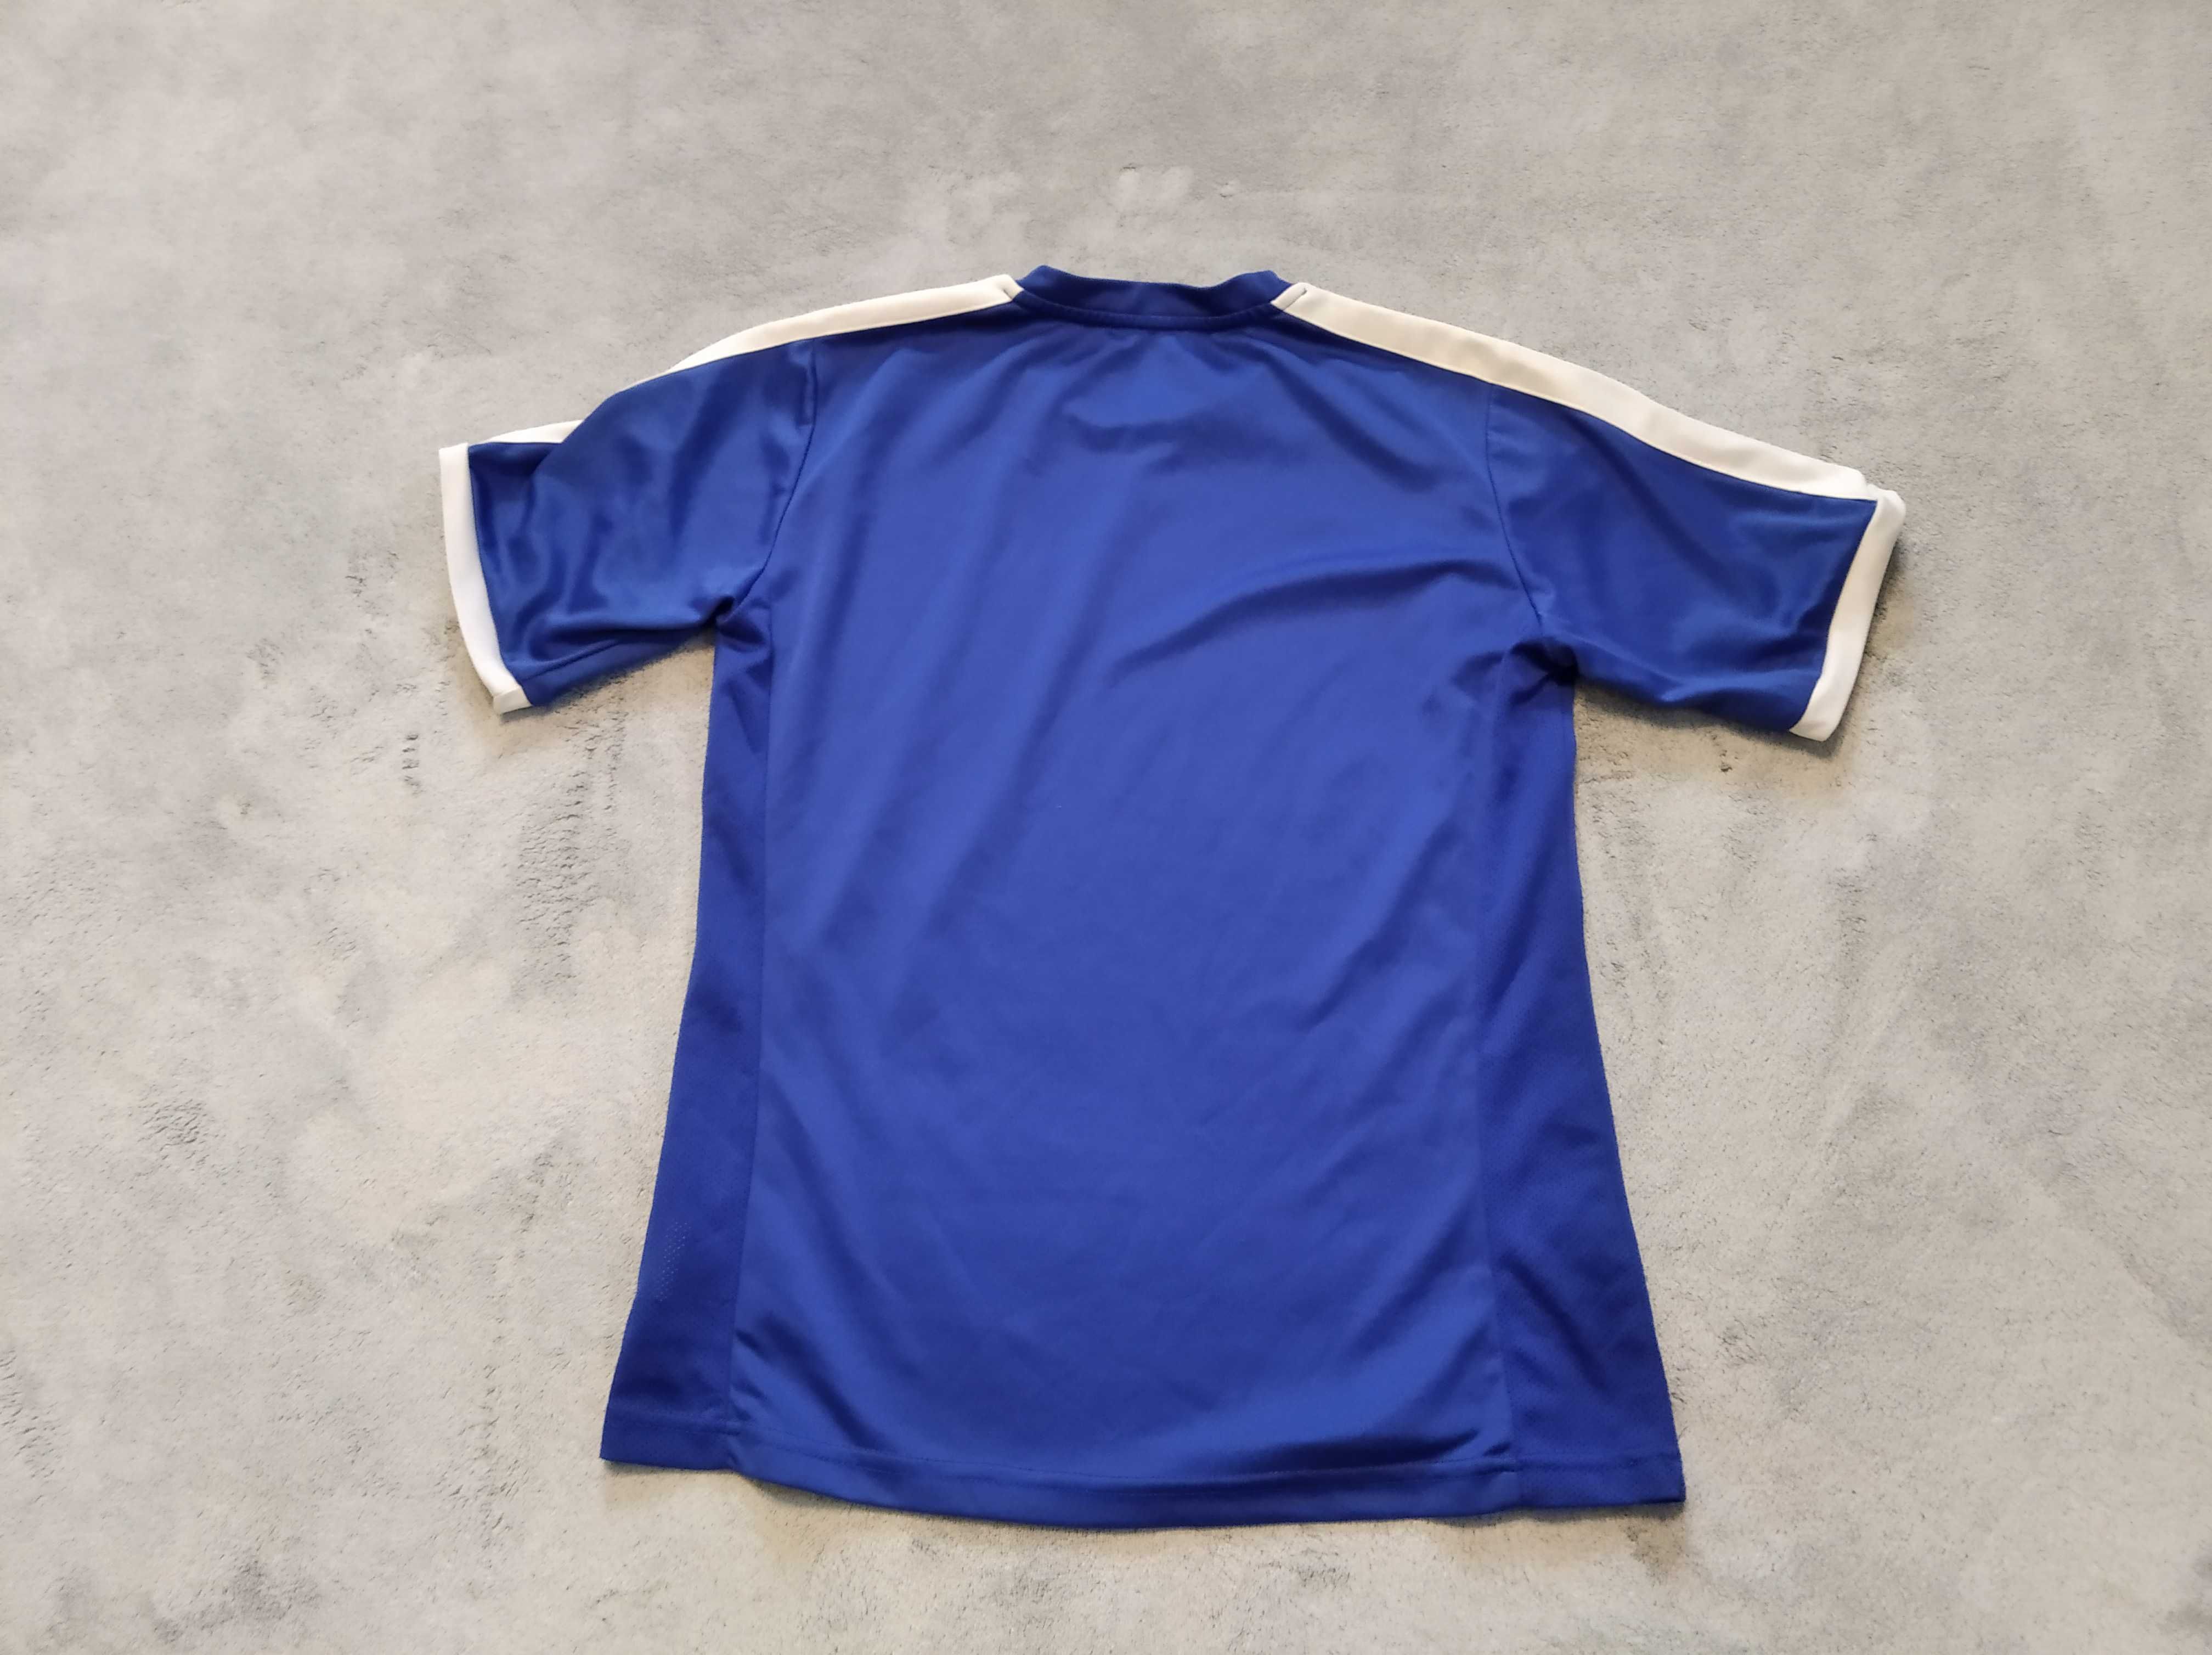 Koszulka termoaktywna Sondico roz. 158 na 13 lat piłka bieganie